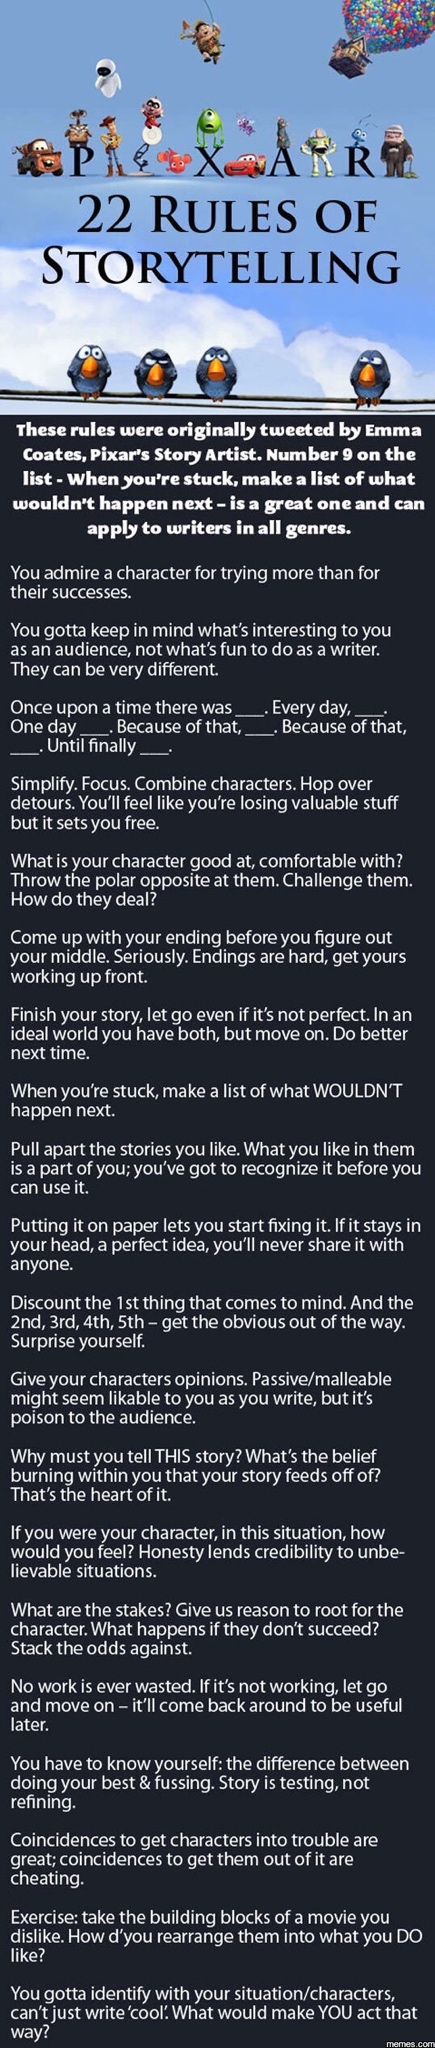 Pixar's 22 Rules of Storytelling.